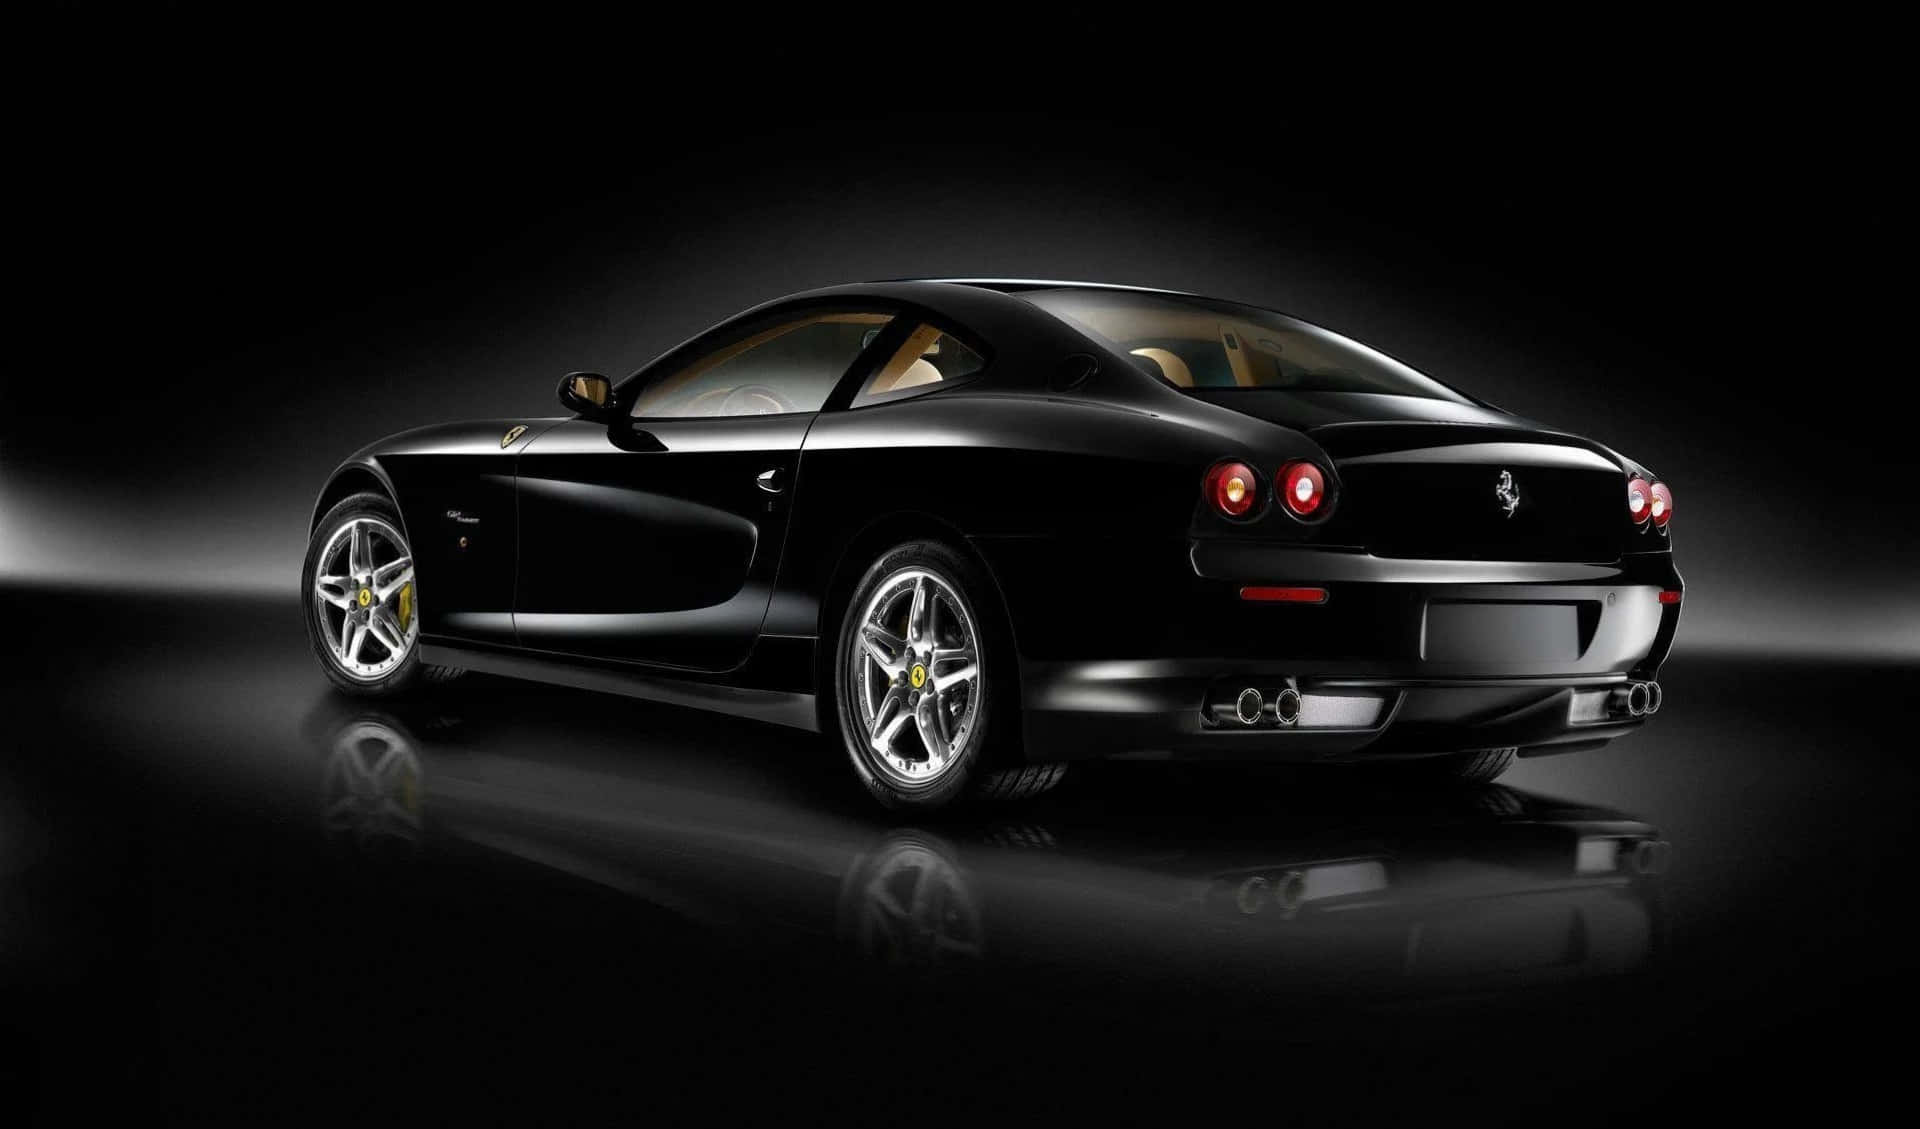 Ferraricalifornia - Bakgrundsbilder